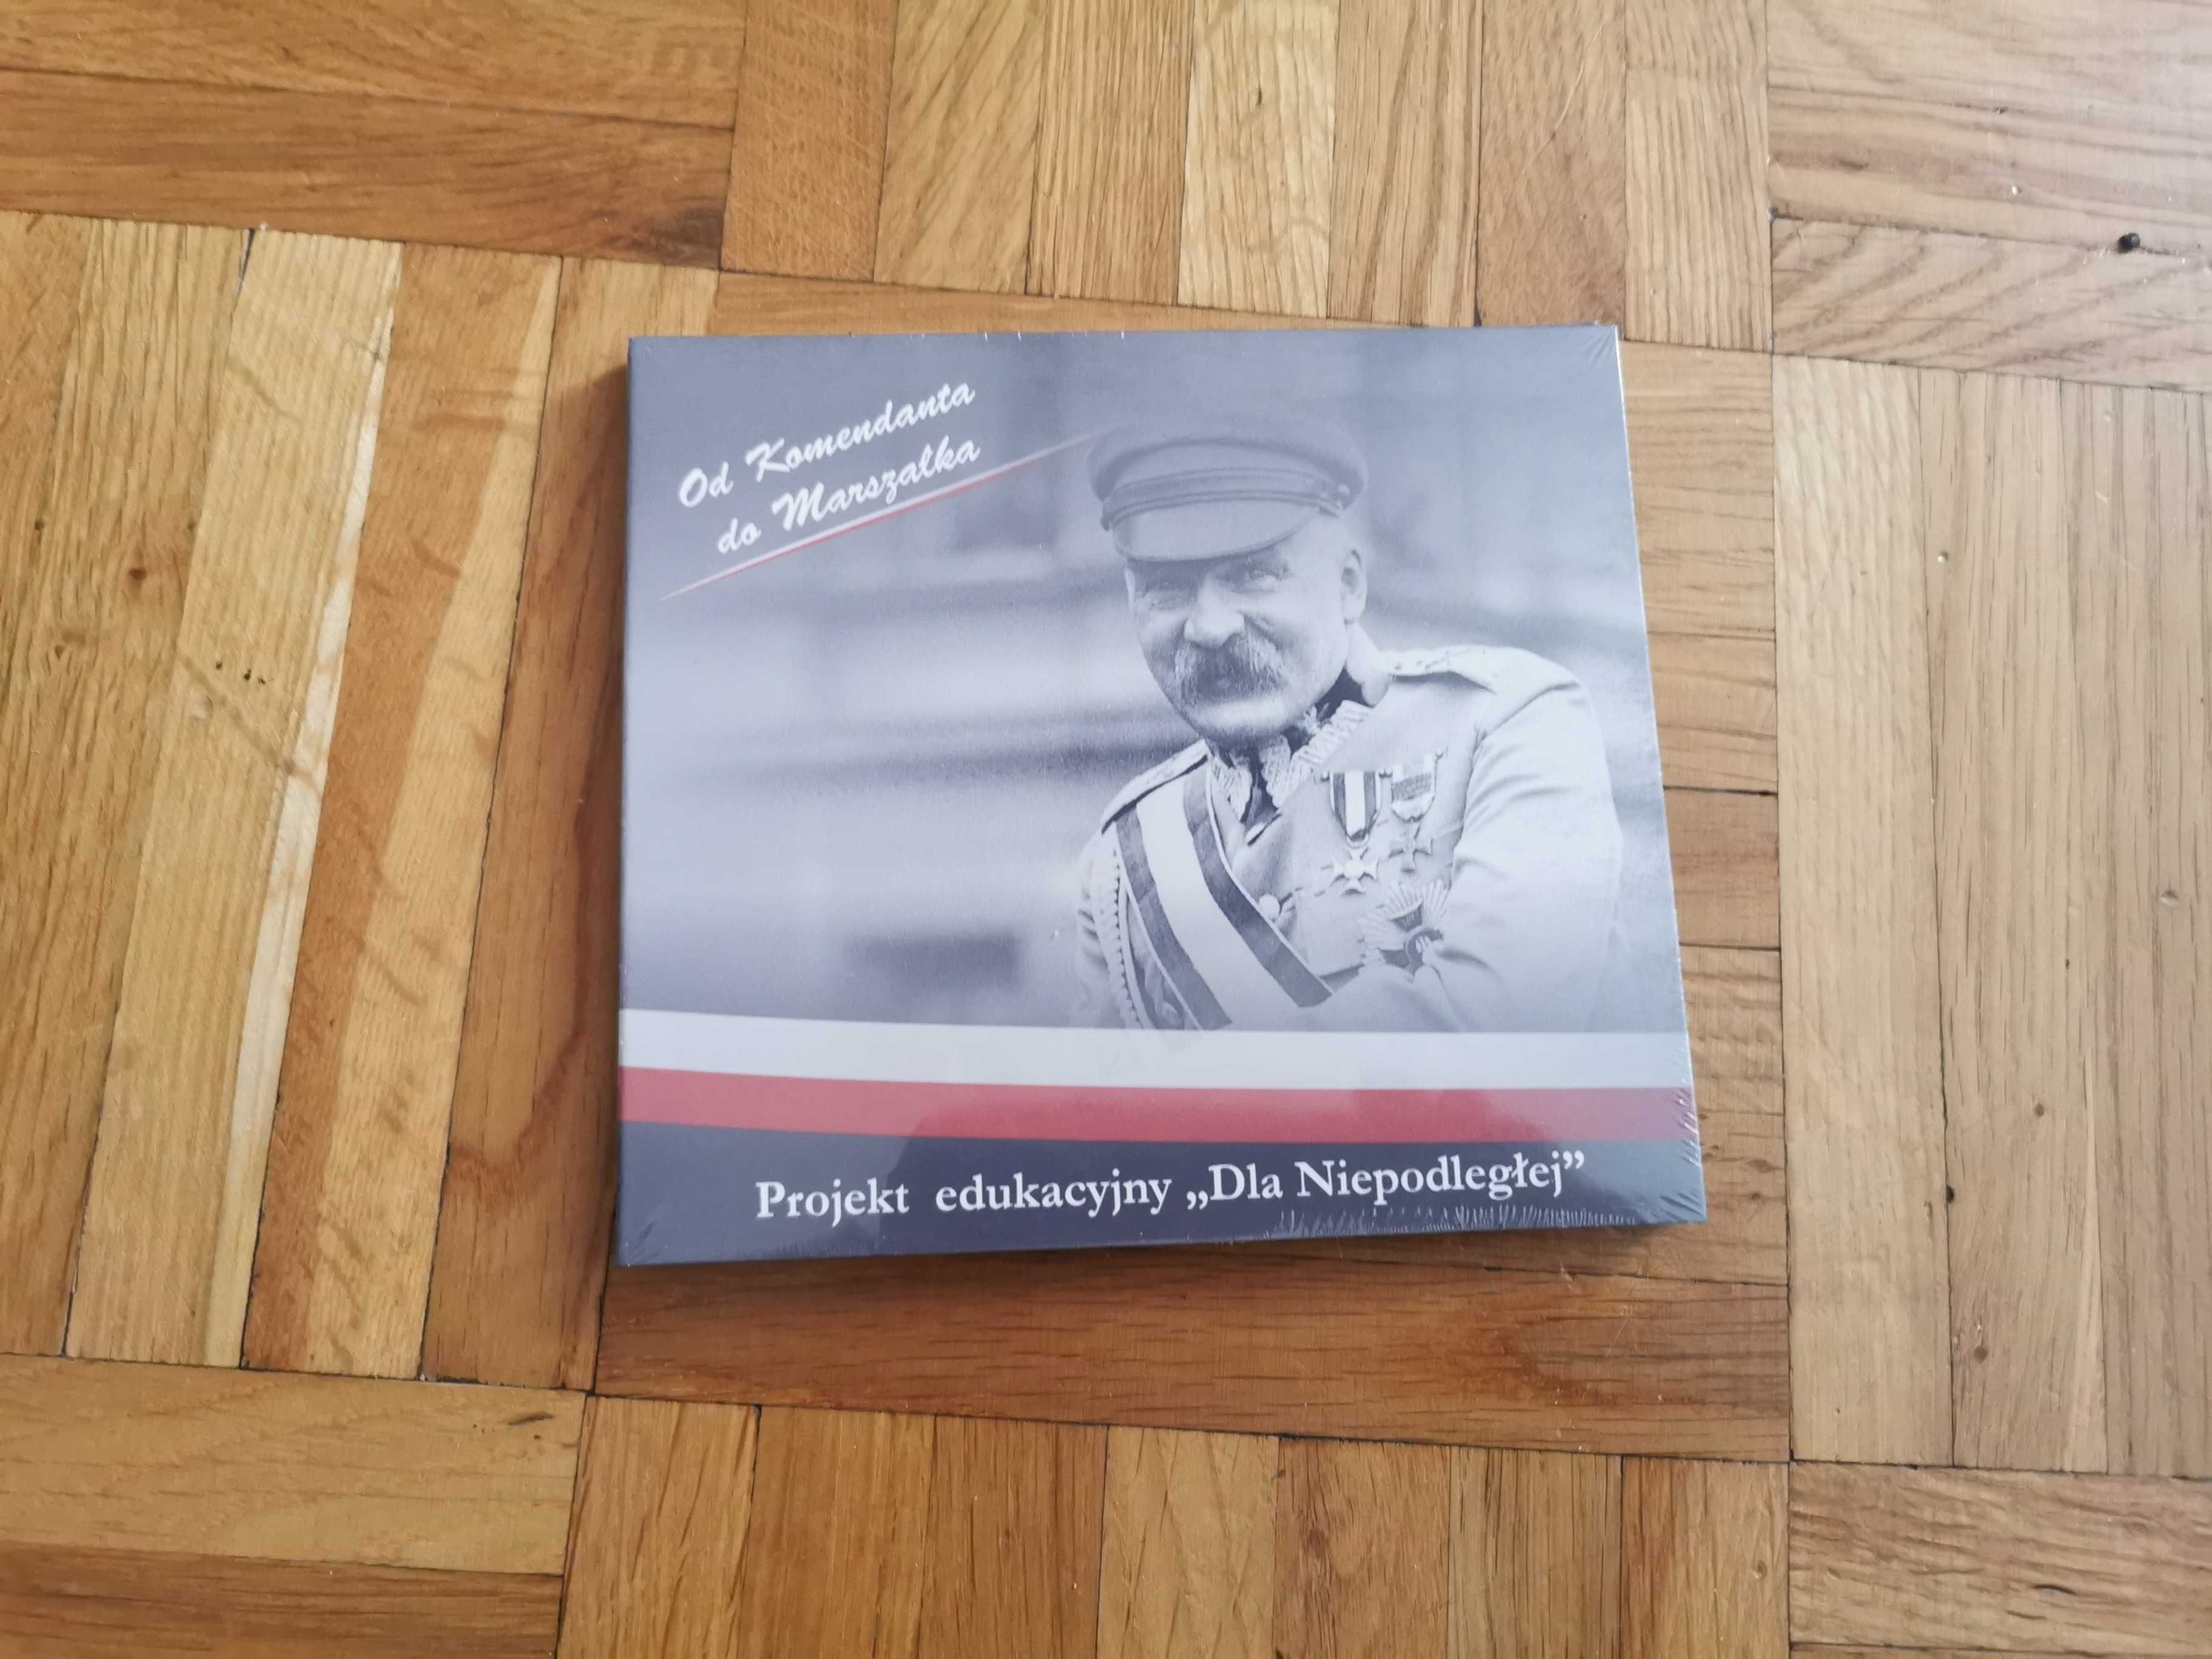 Dvd Józef Piłsudski „Od komendanta do marszałka”